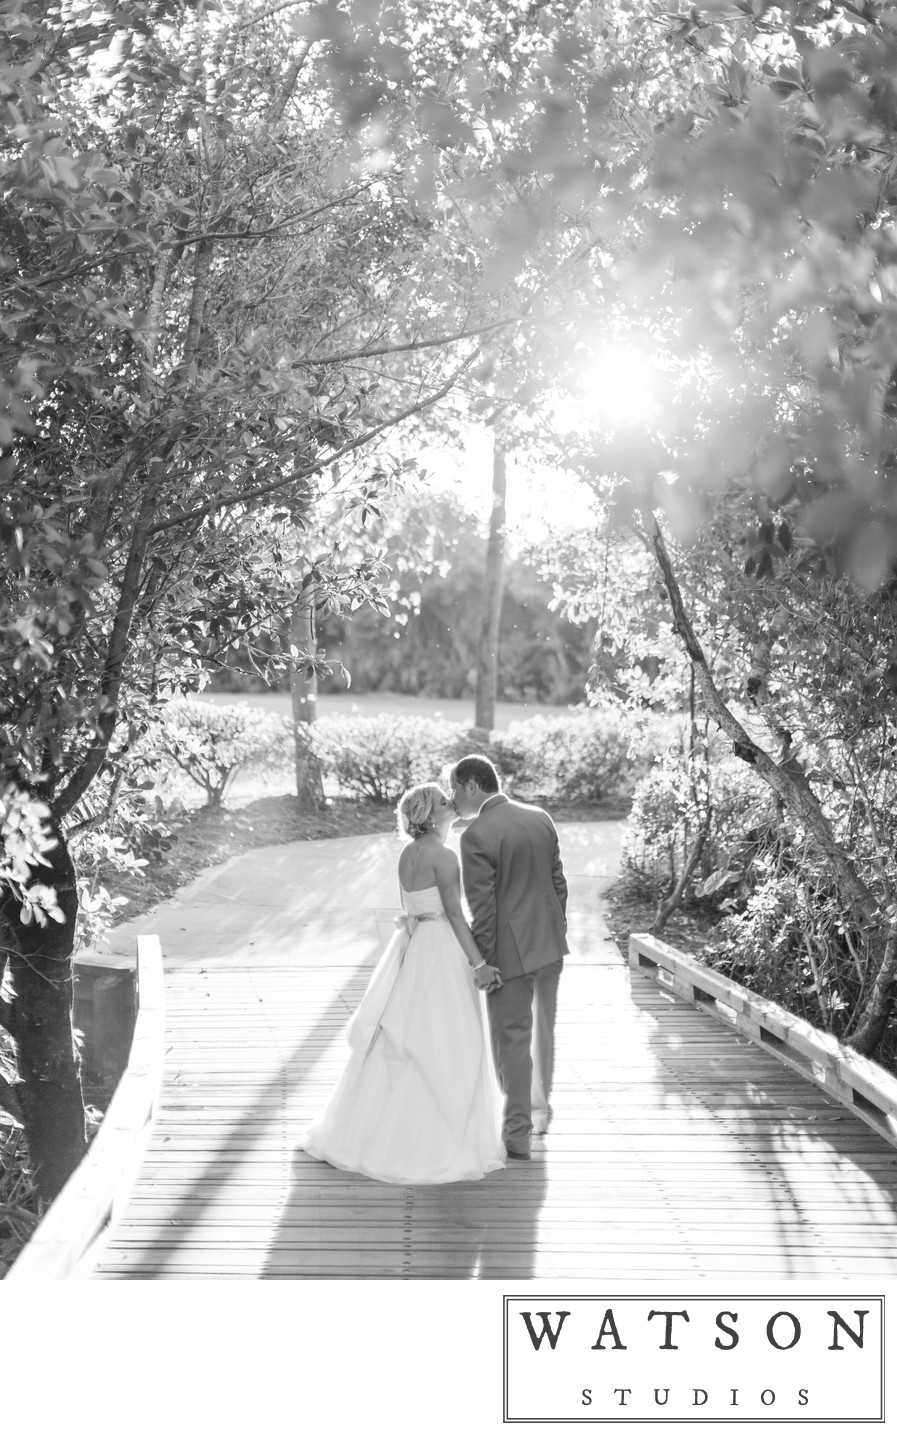 Wedding Photographers in Southwest Florida